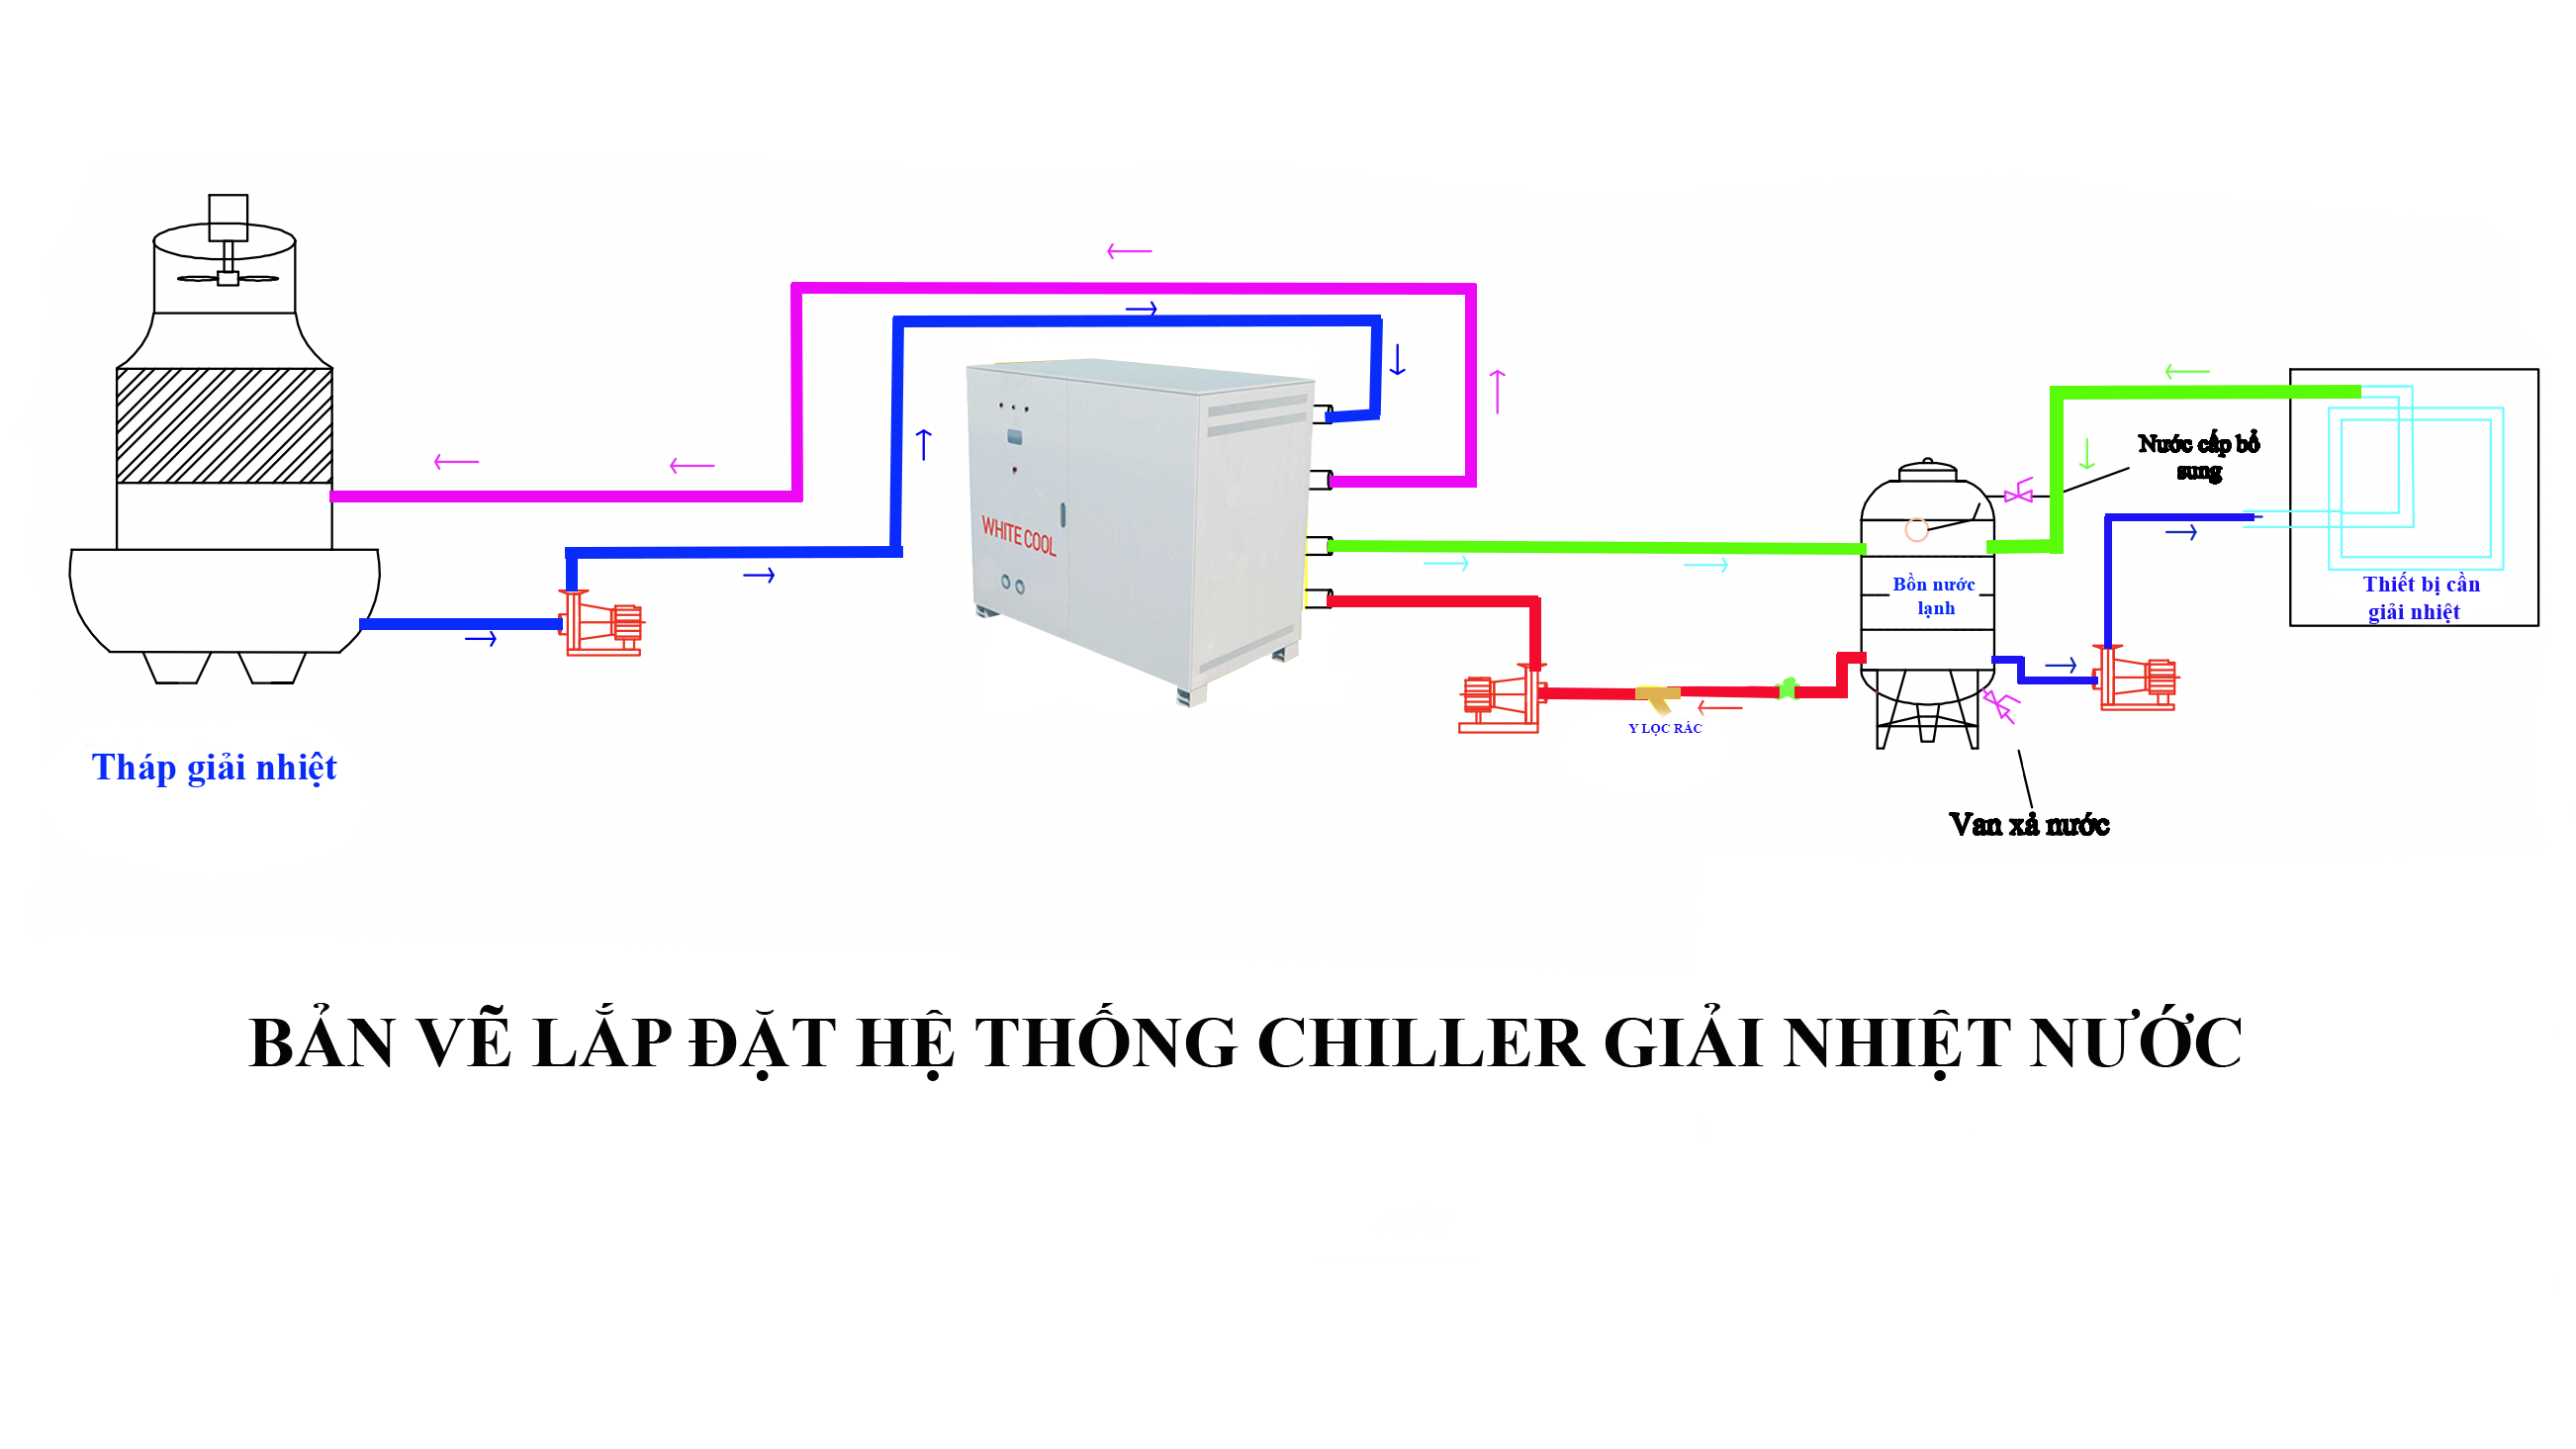 Chiller inverter là thiết bị quan trọng trong hệ thống điều hòa không khí. Nếu bạn muốn hiểu rõ hơn về cách hoạt động, hãy xem hình ảnh liên quan đến thiết bị này. Bạn sẽ thấy được những tính năng ưu việt của Chiller inverter và tầm quan trọng của nó đối với công trình.